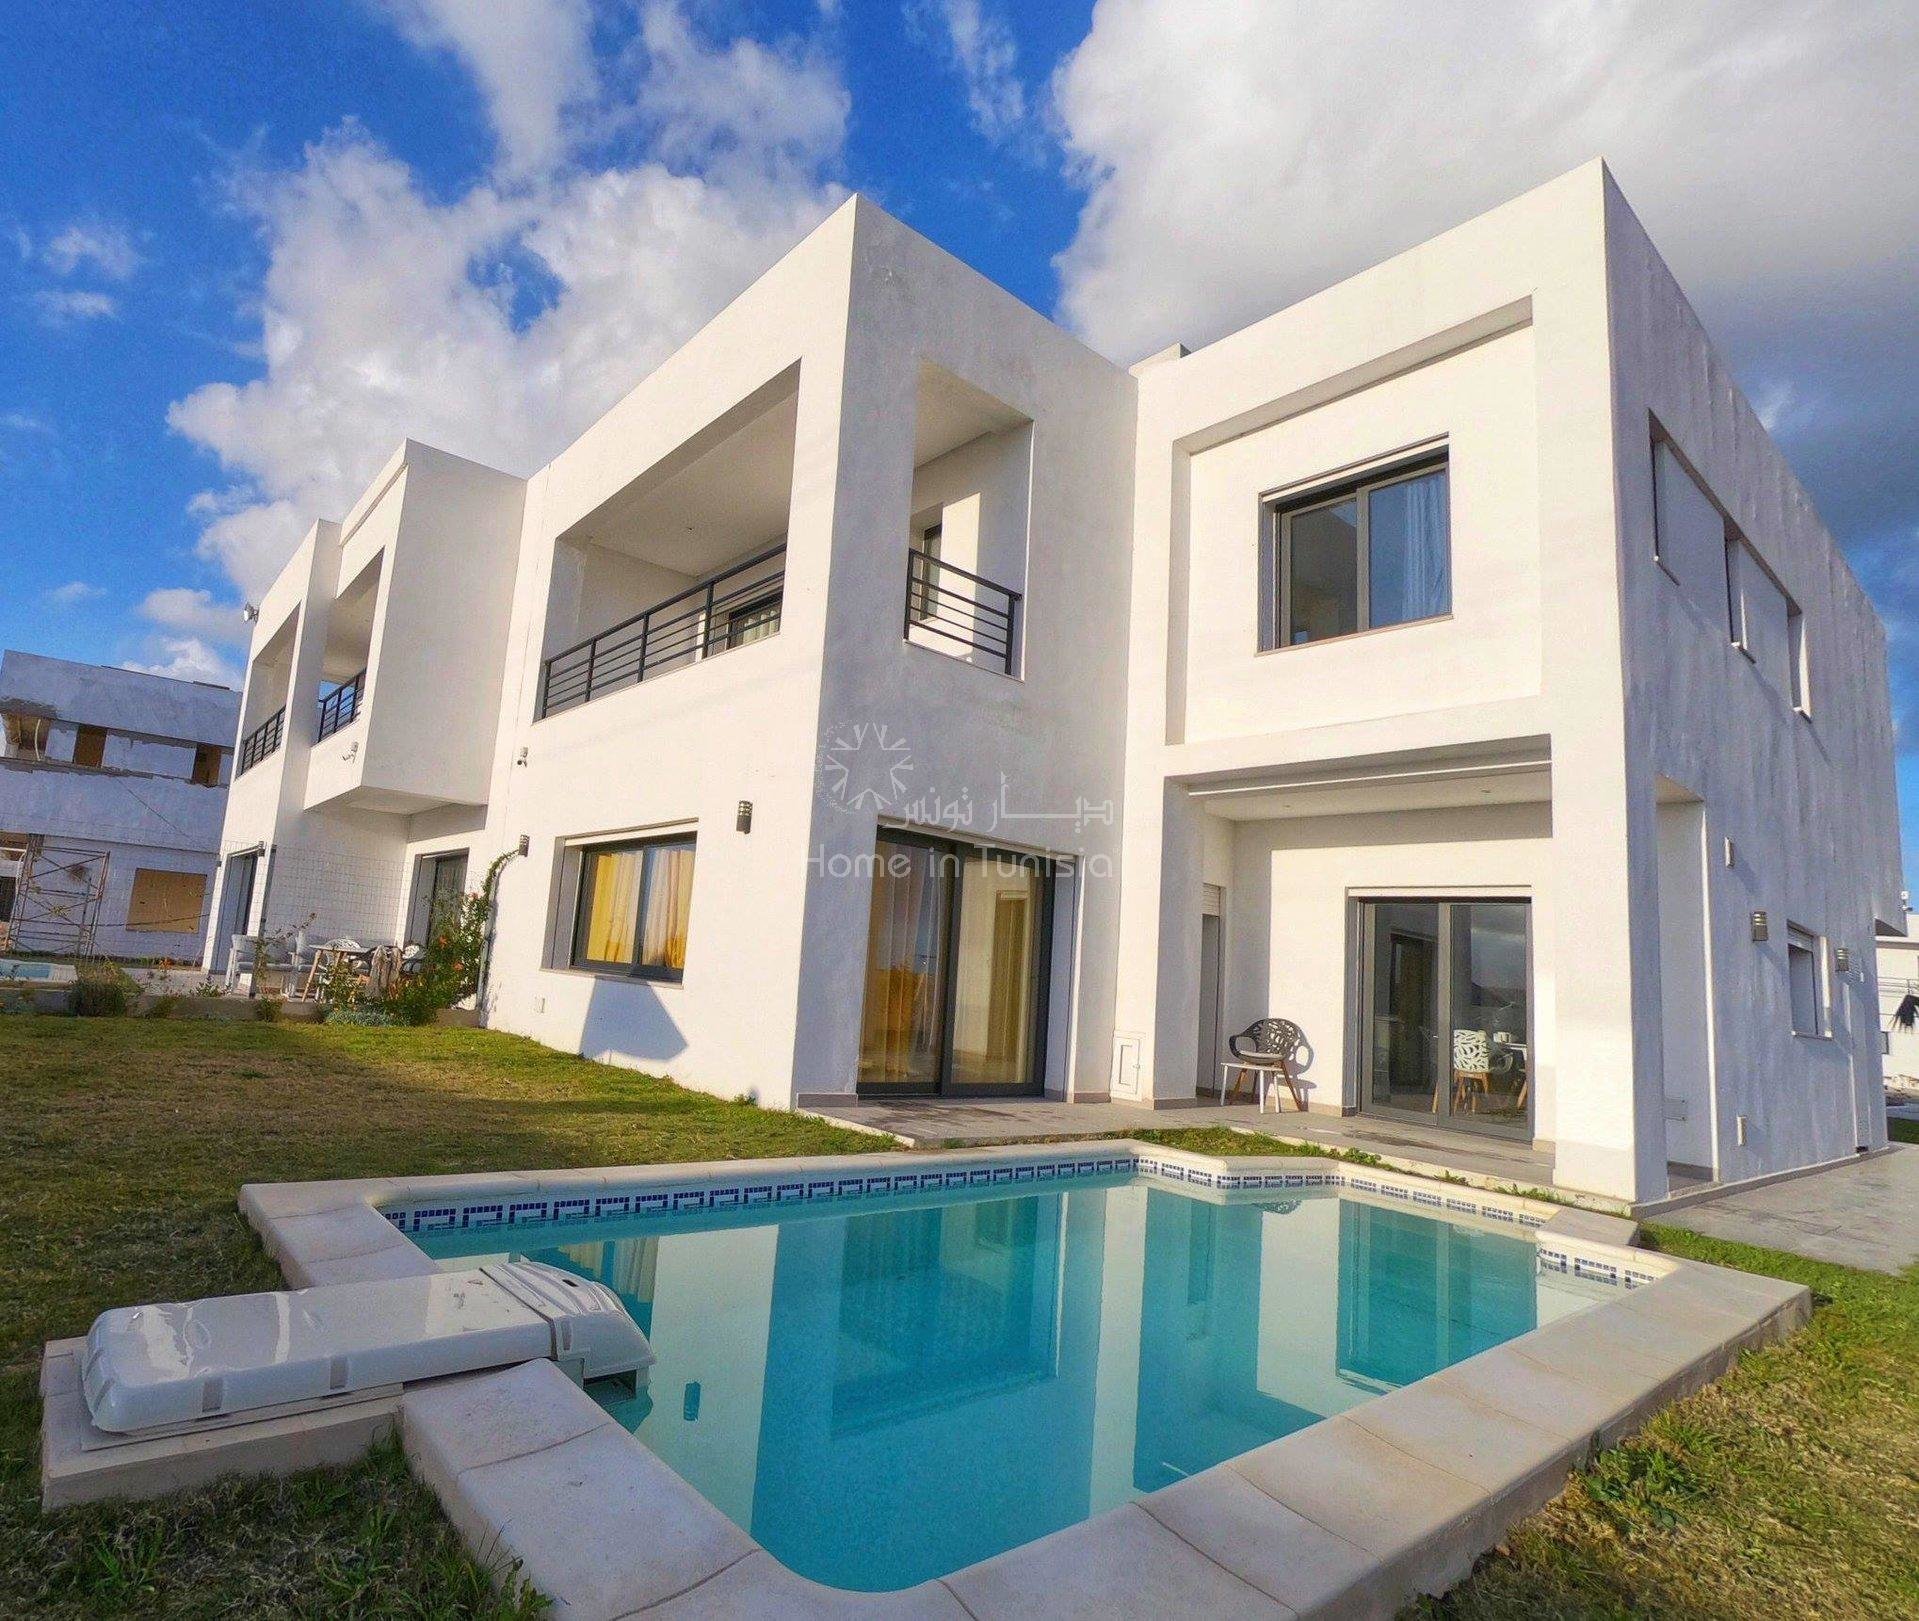 Villa golf isolée neuve de 426 m2 avec 4 chambres terrasse jardin piscine